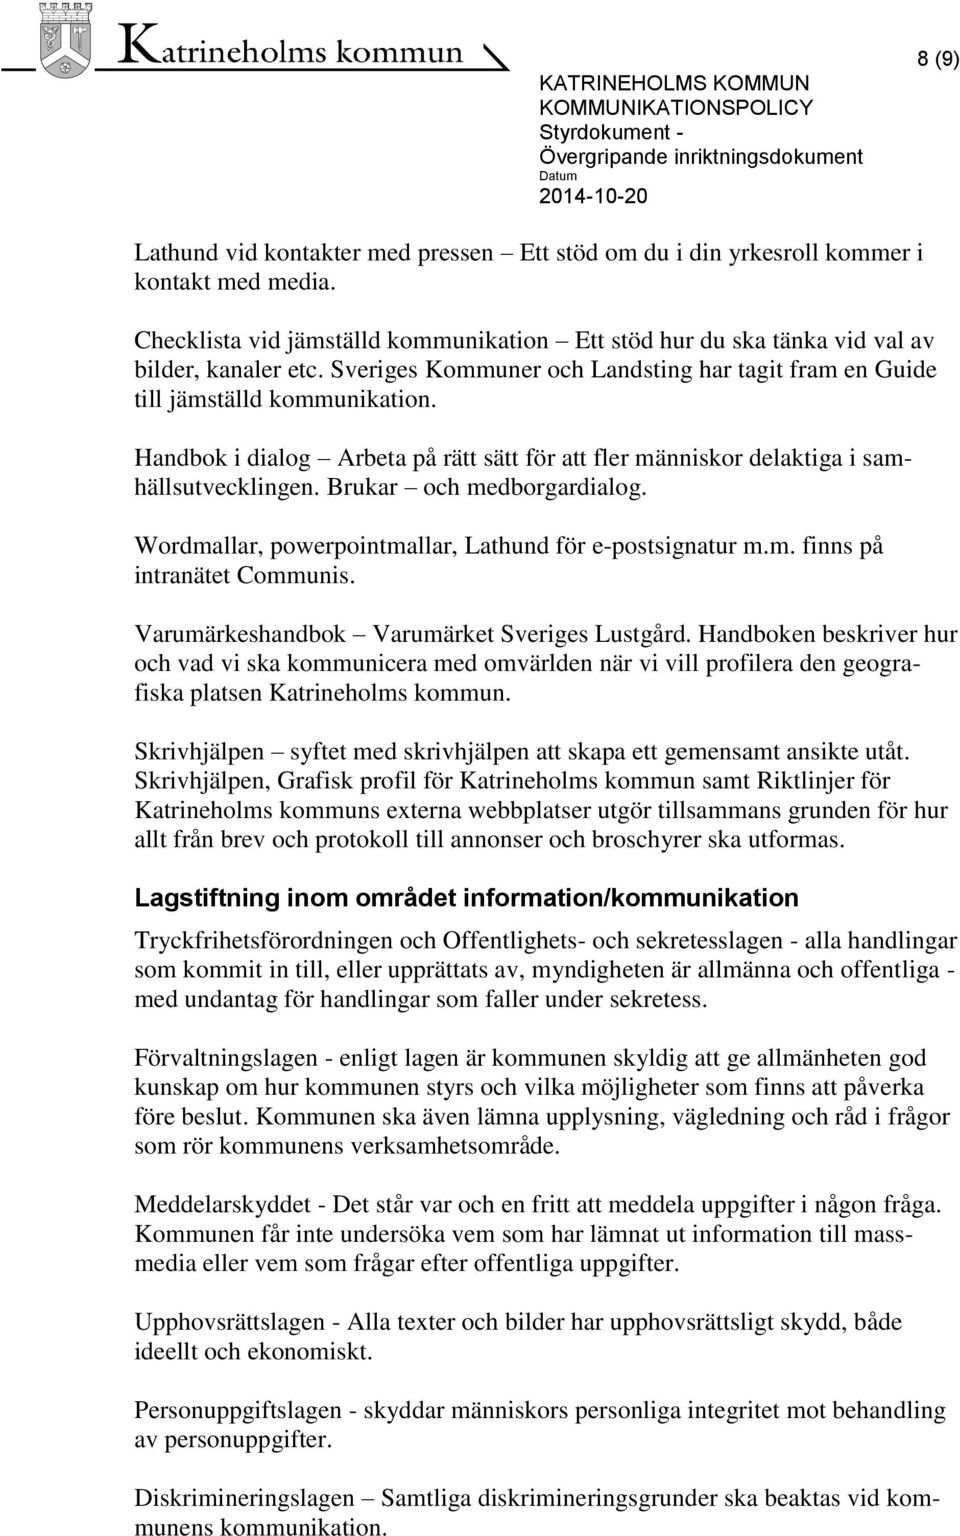 Brukar och medborgardialog. Wordmallar, powerpointmallar, Lathund för e-postsignatur m.m. finns på intranätet Communis. Varumärkeshandbok Varumärket Sveriges Lustgård.